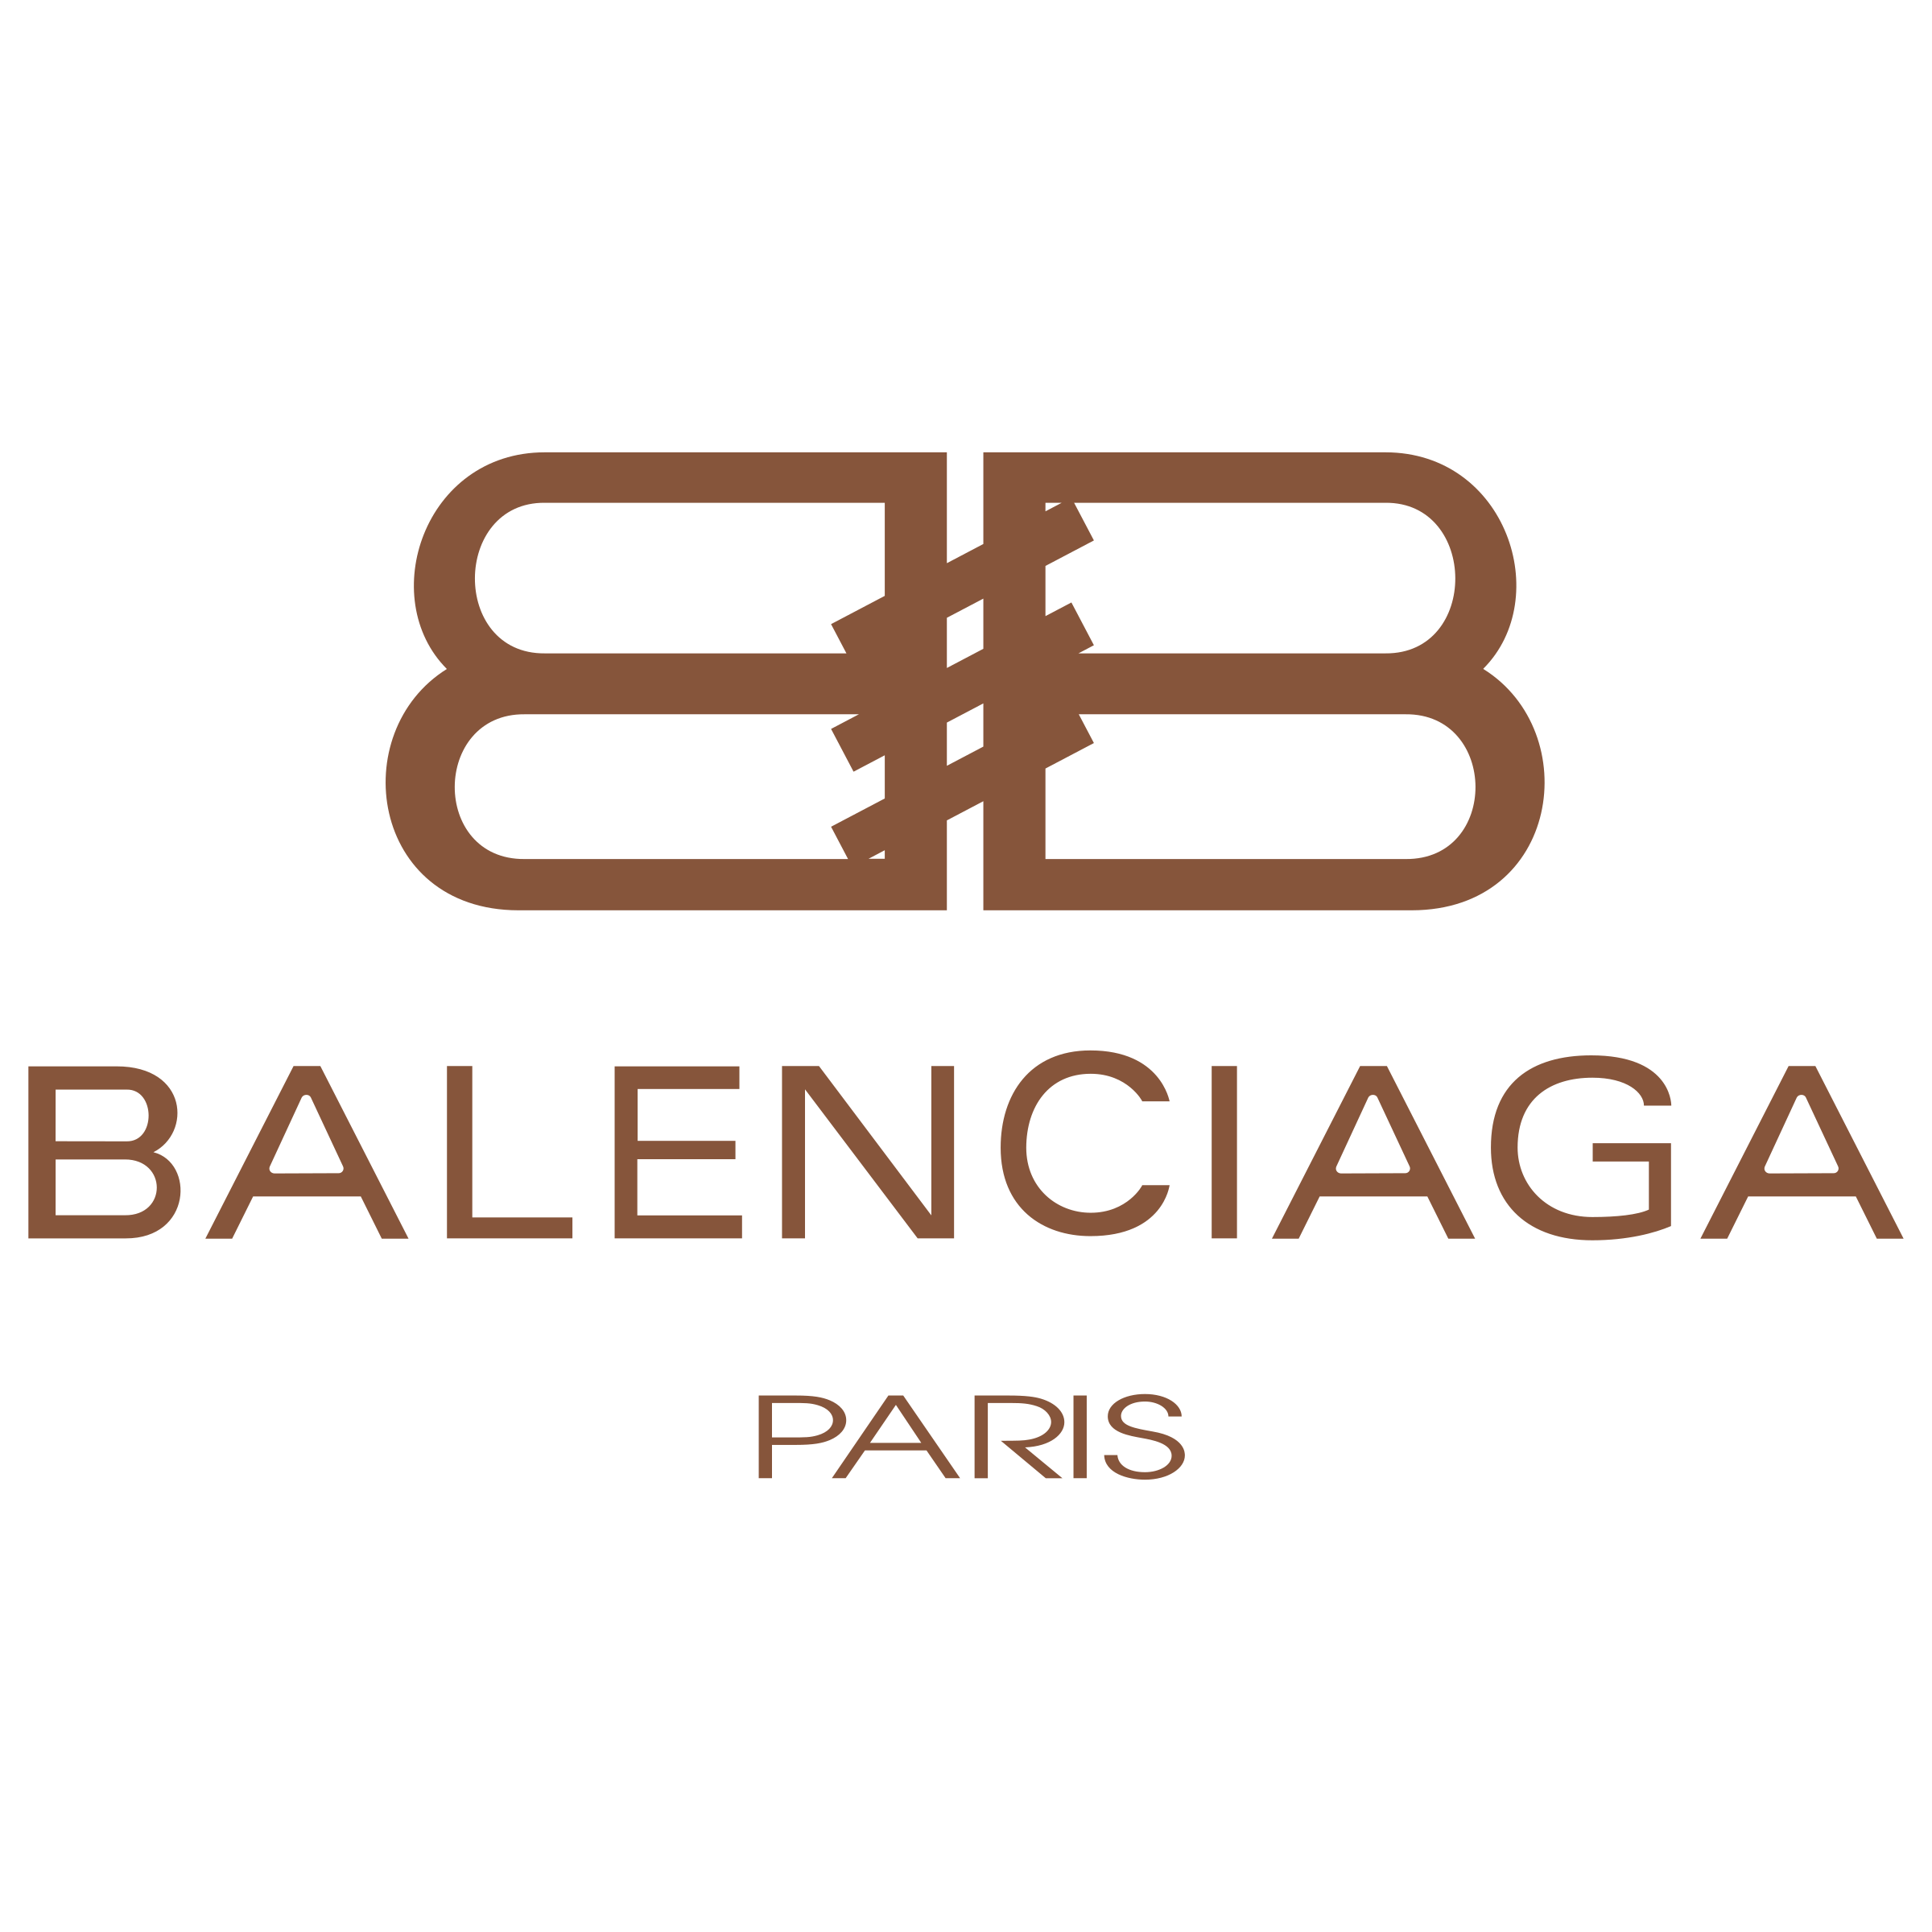 Balenciaga logo Imágenes Transparentes